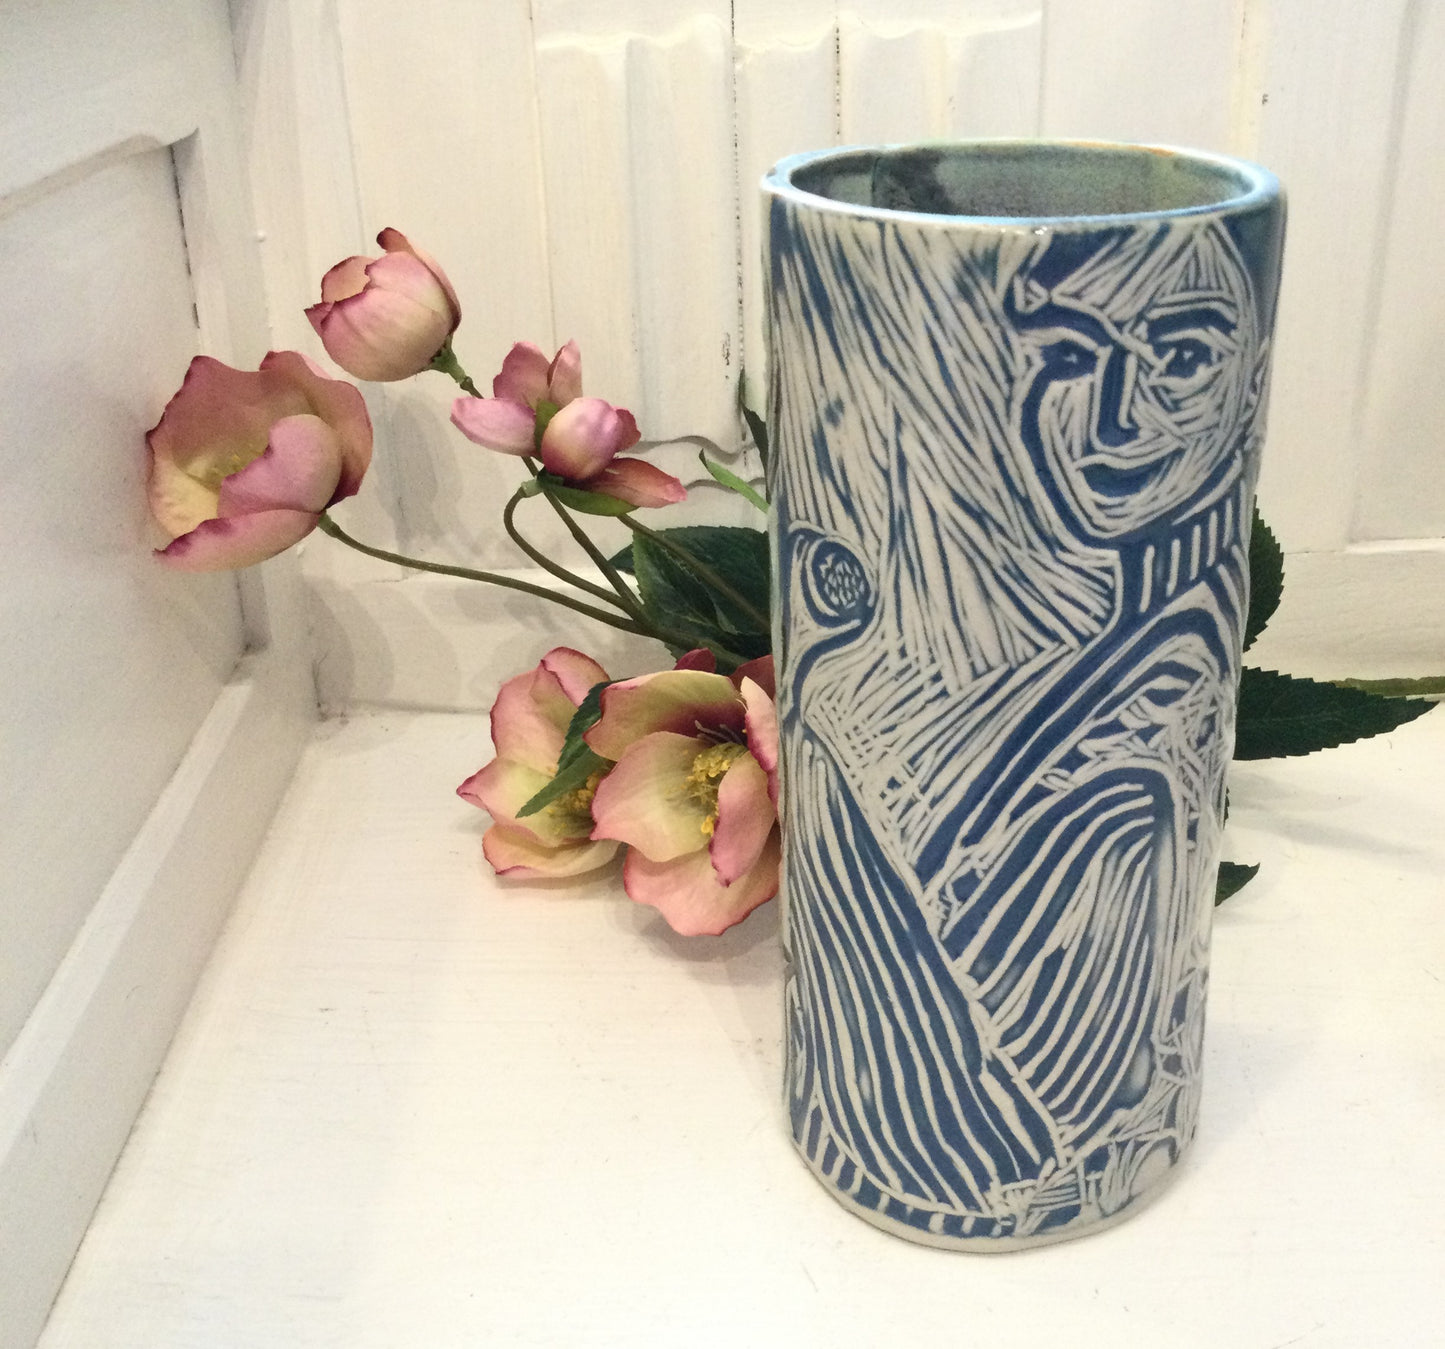 Cylinder keramik vase i mintgrøn og blå.